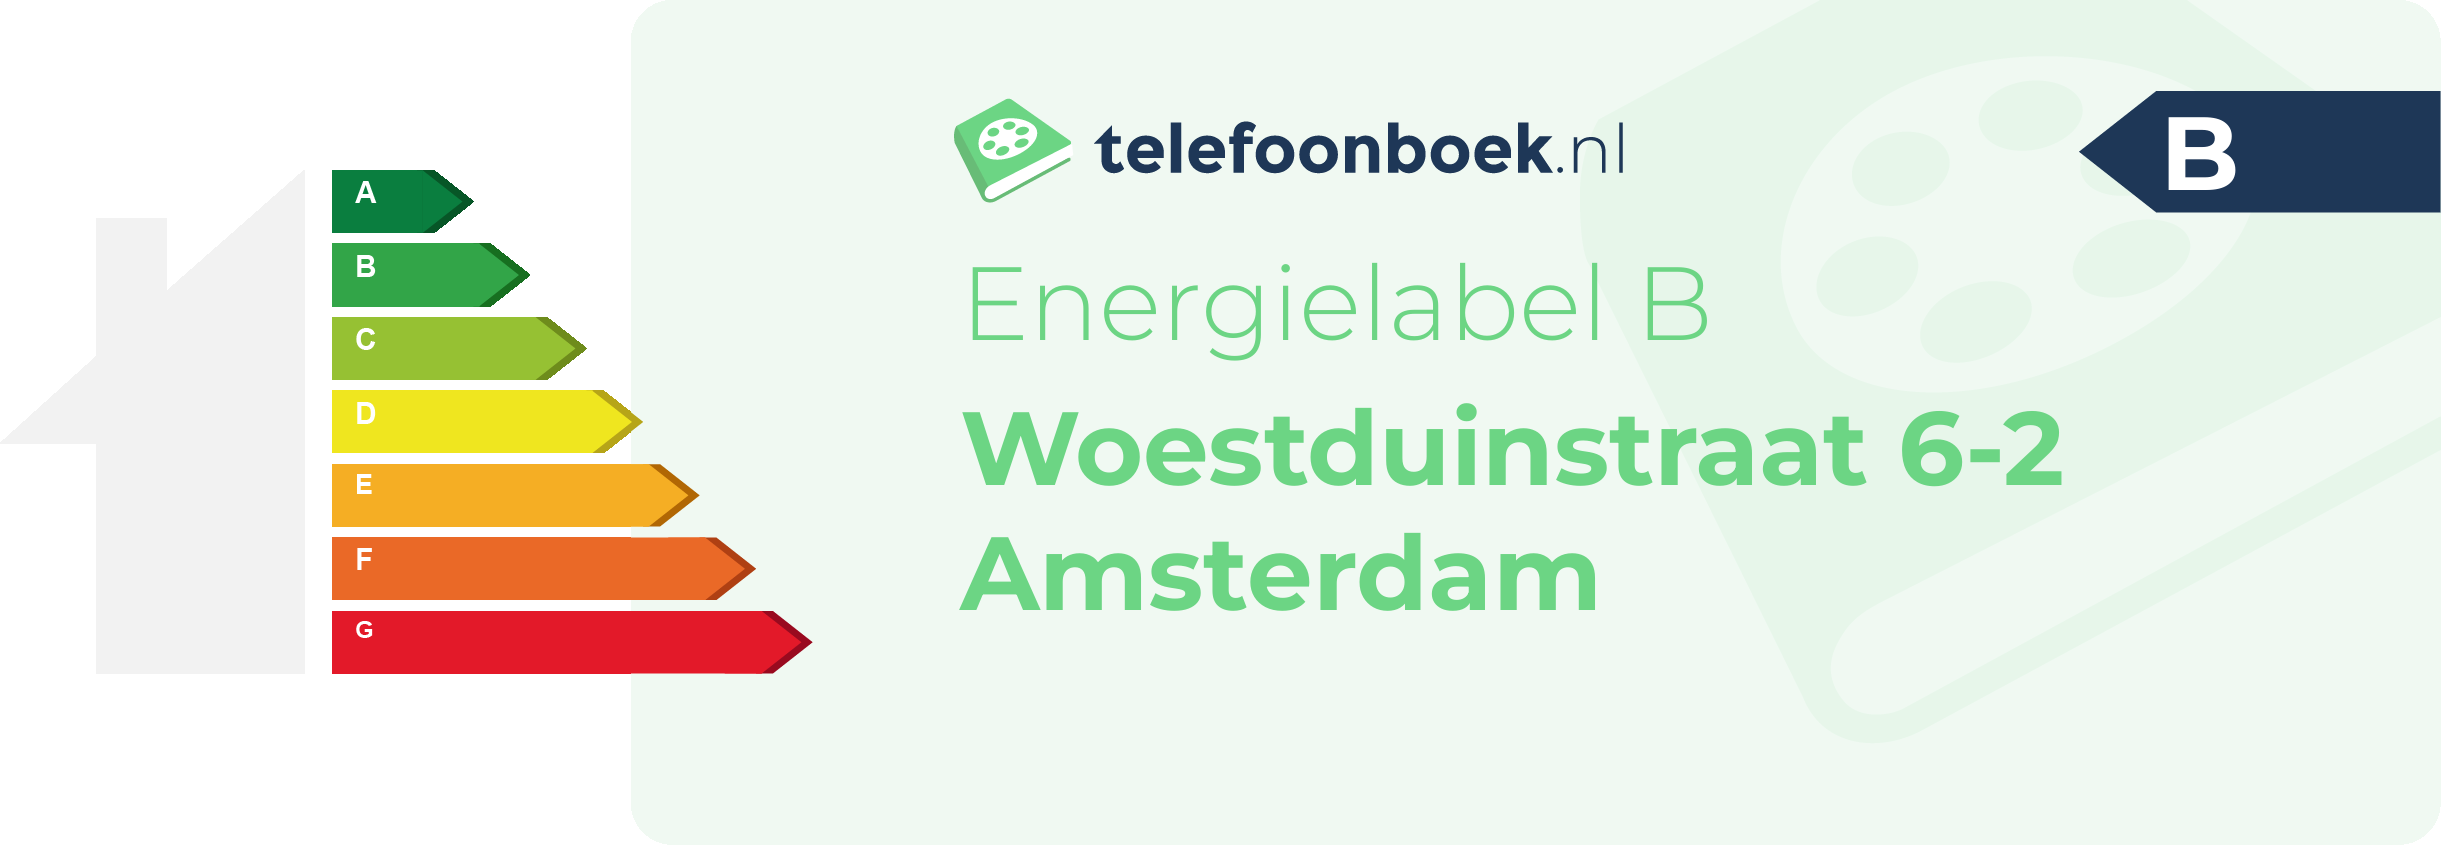 Energielabel Woestduinstraat 6-2 Amsterdam